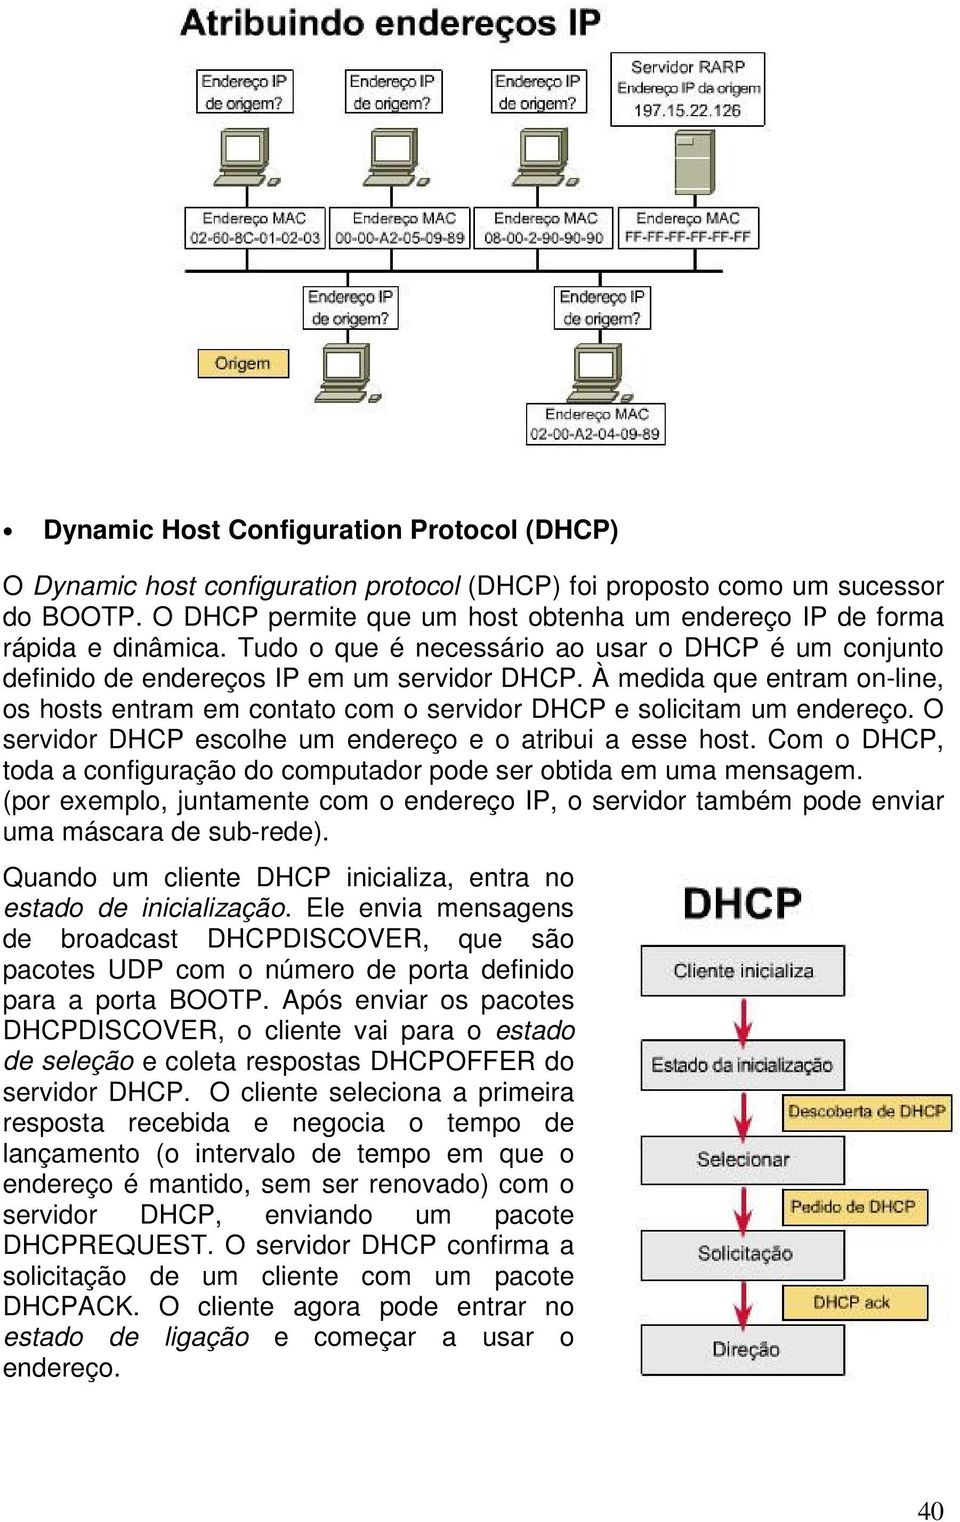 À medida que entram on-line, os hosts entram em contato com o servidor DHCP e solicitam um endereço. O servidor DHCP escolhe um endereço e o atribui a esse host.